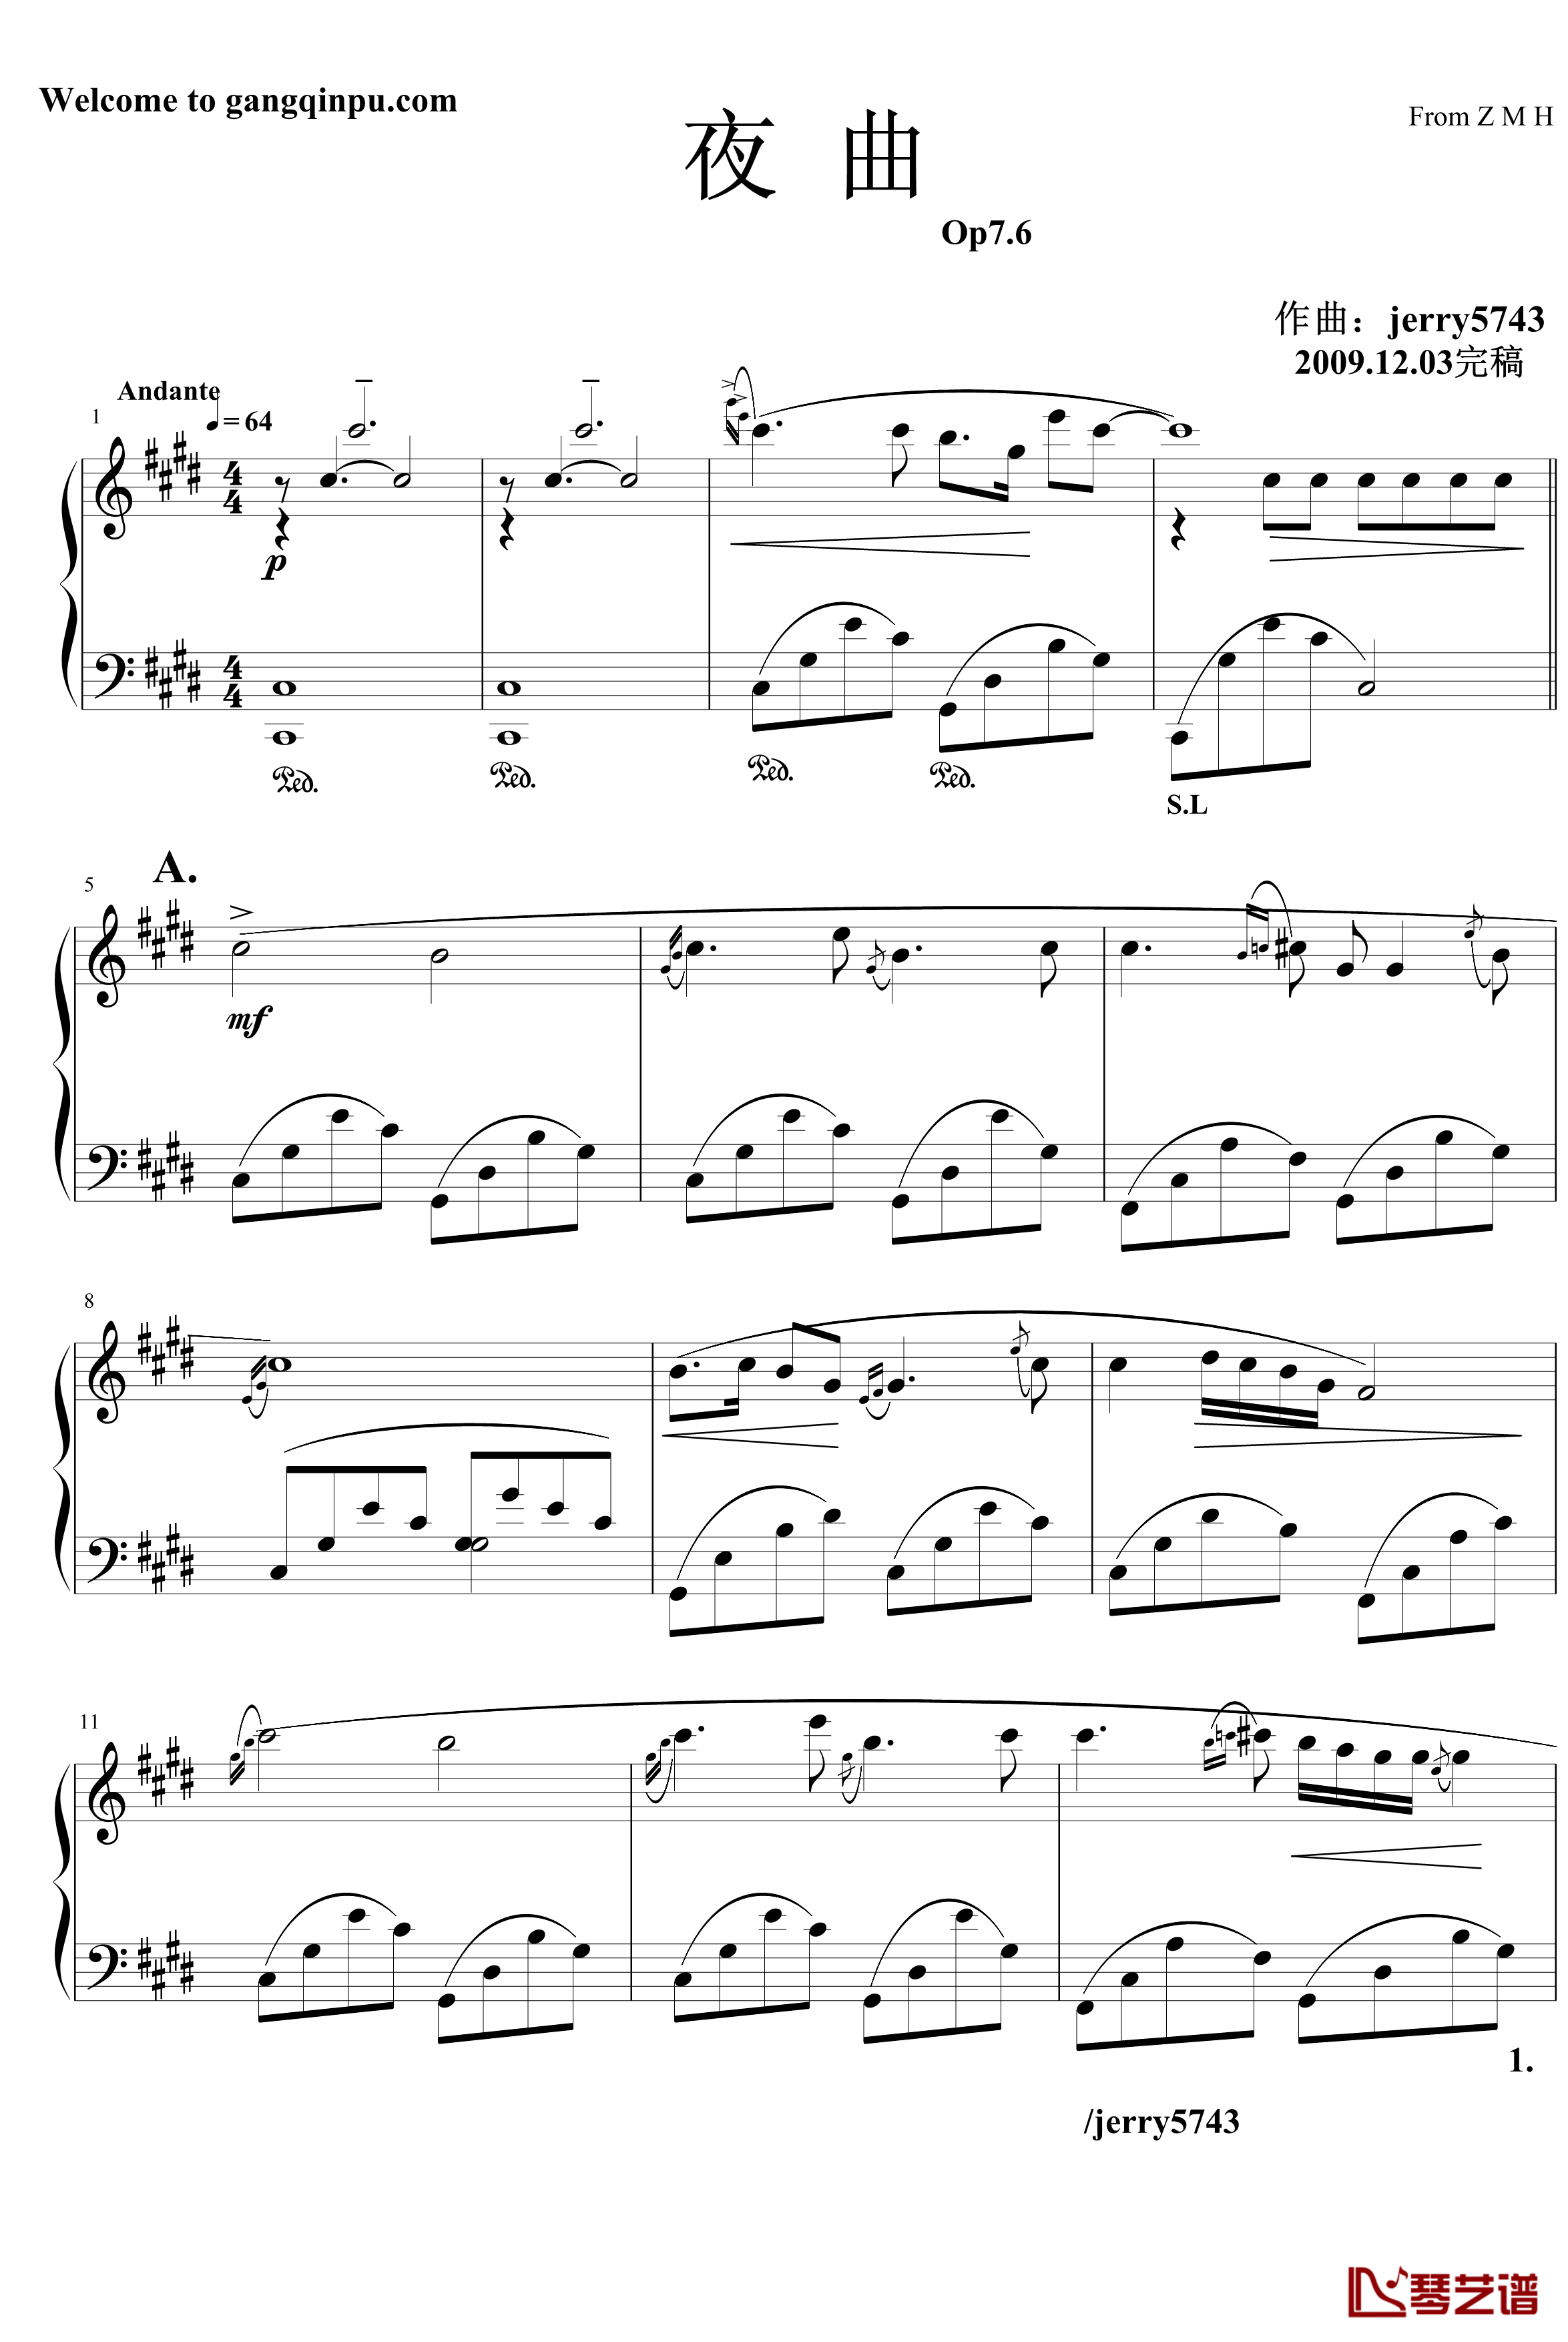 夜曲Op7.6钢琴谱-中西式-jerry57431